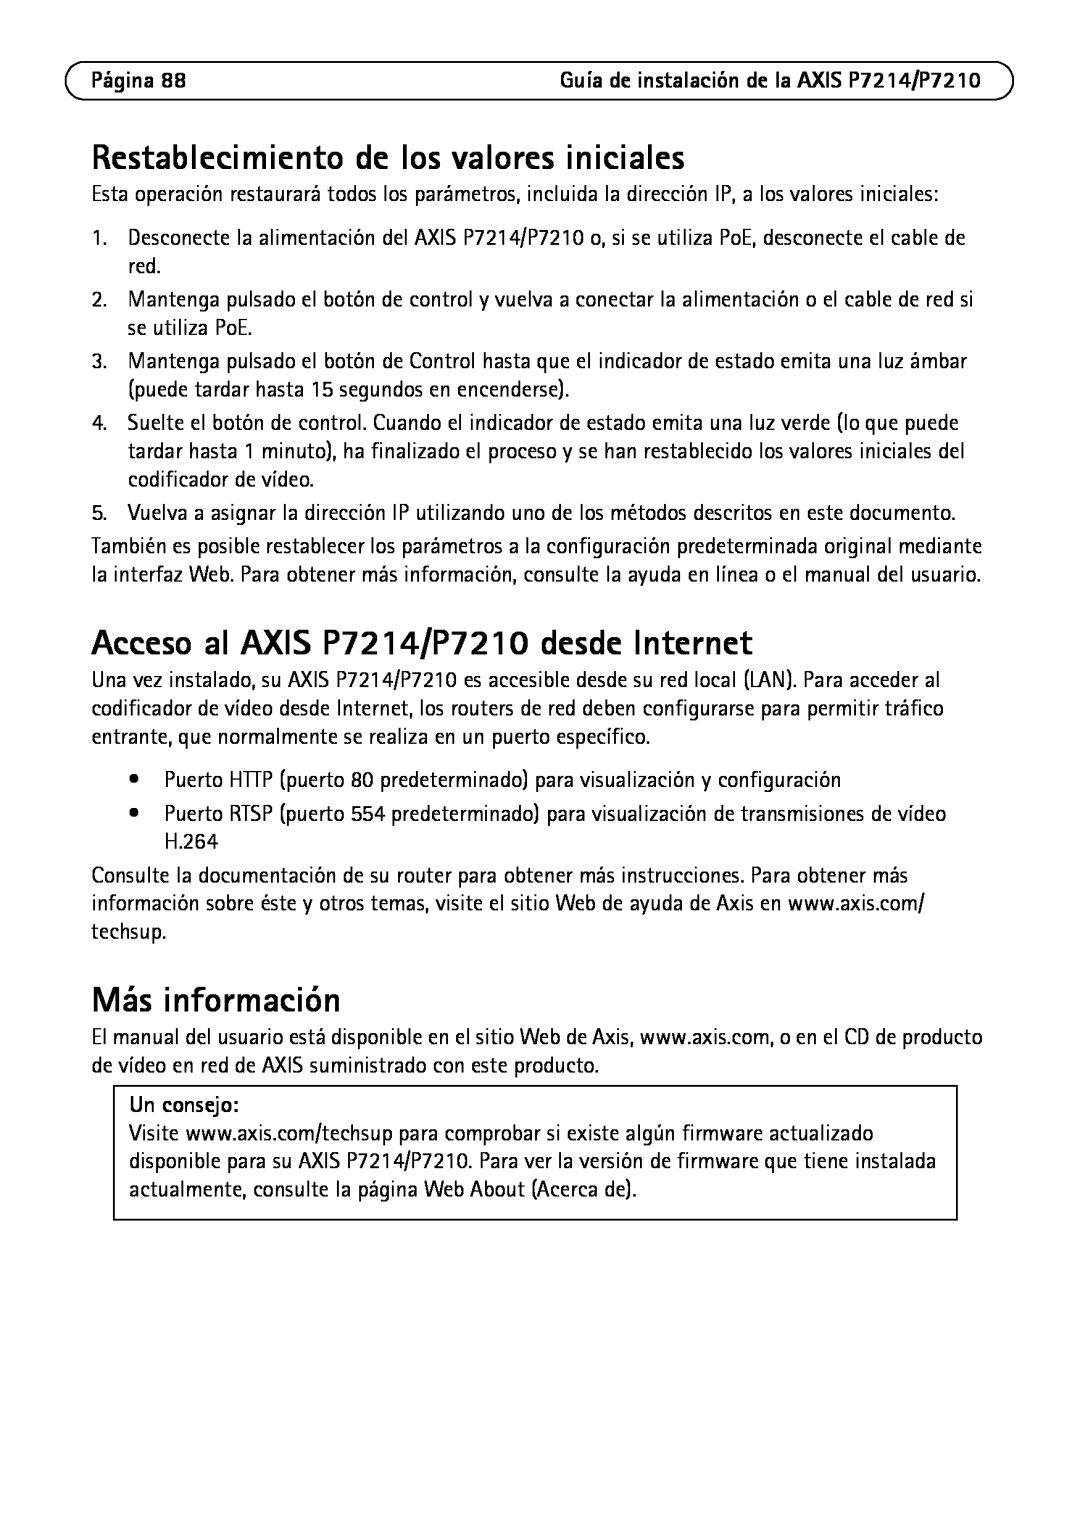 Axis Communications Restablecimiento de los valores iniciales, Acceso al AXIS P7214/P7210 desde Internet, Un consejo 